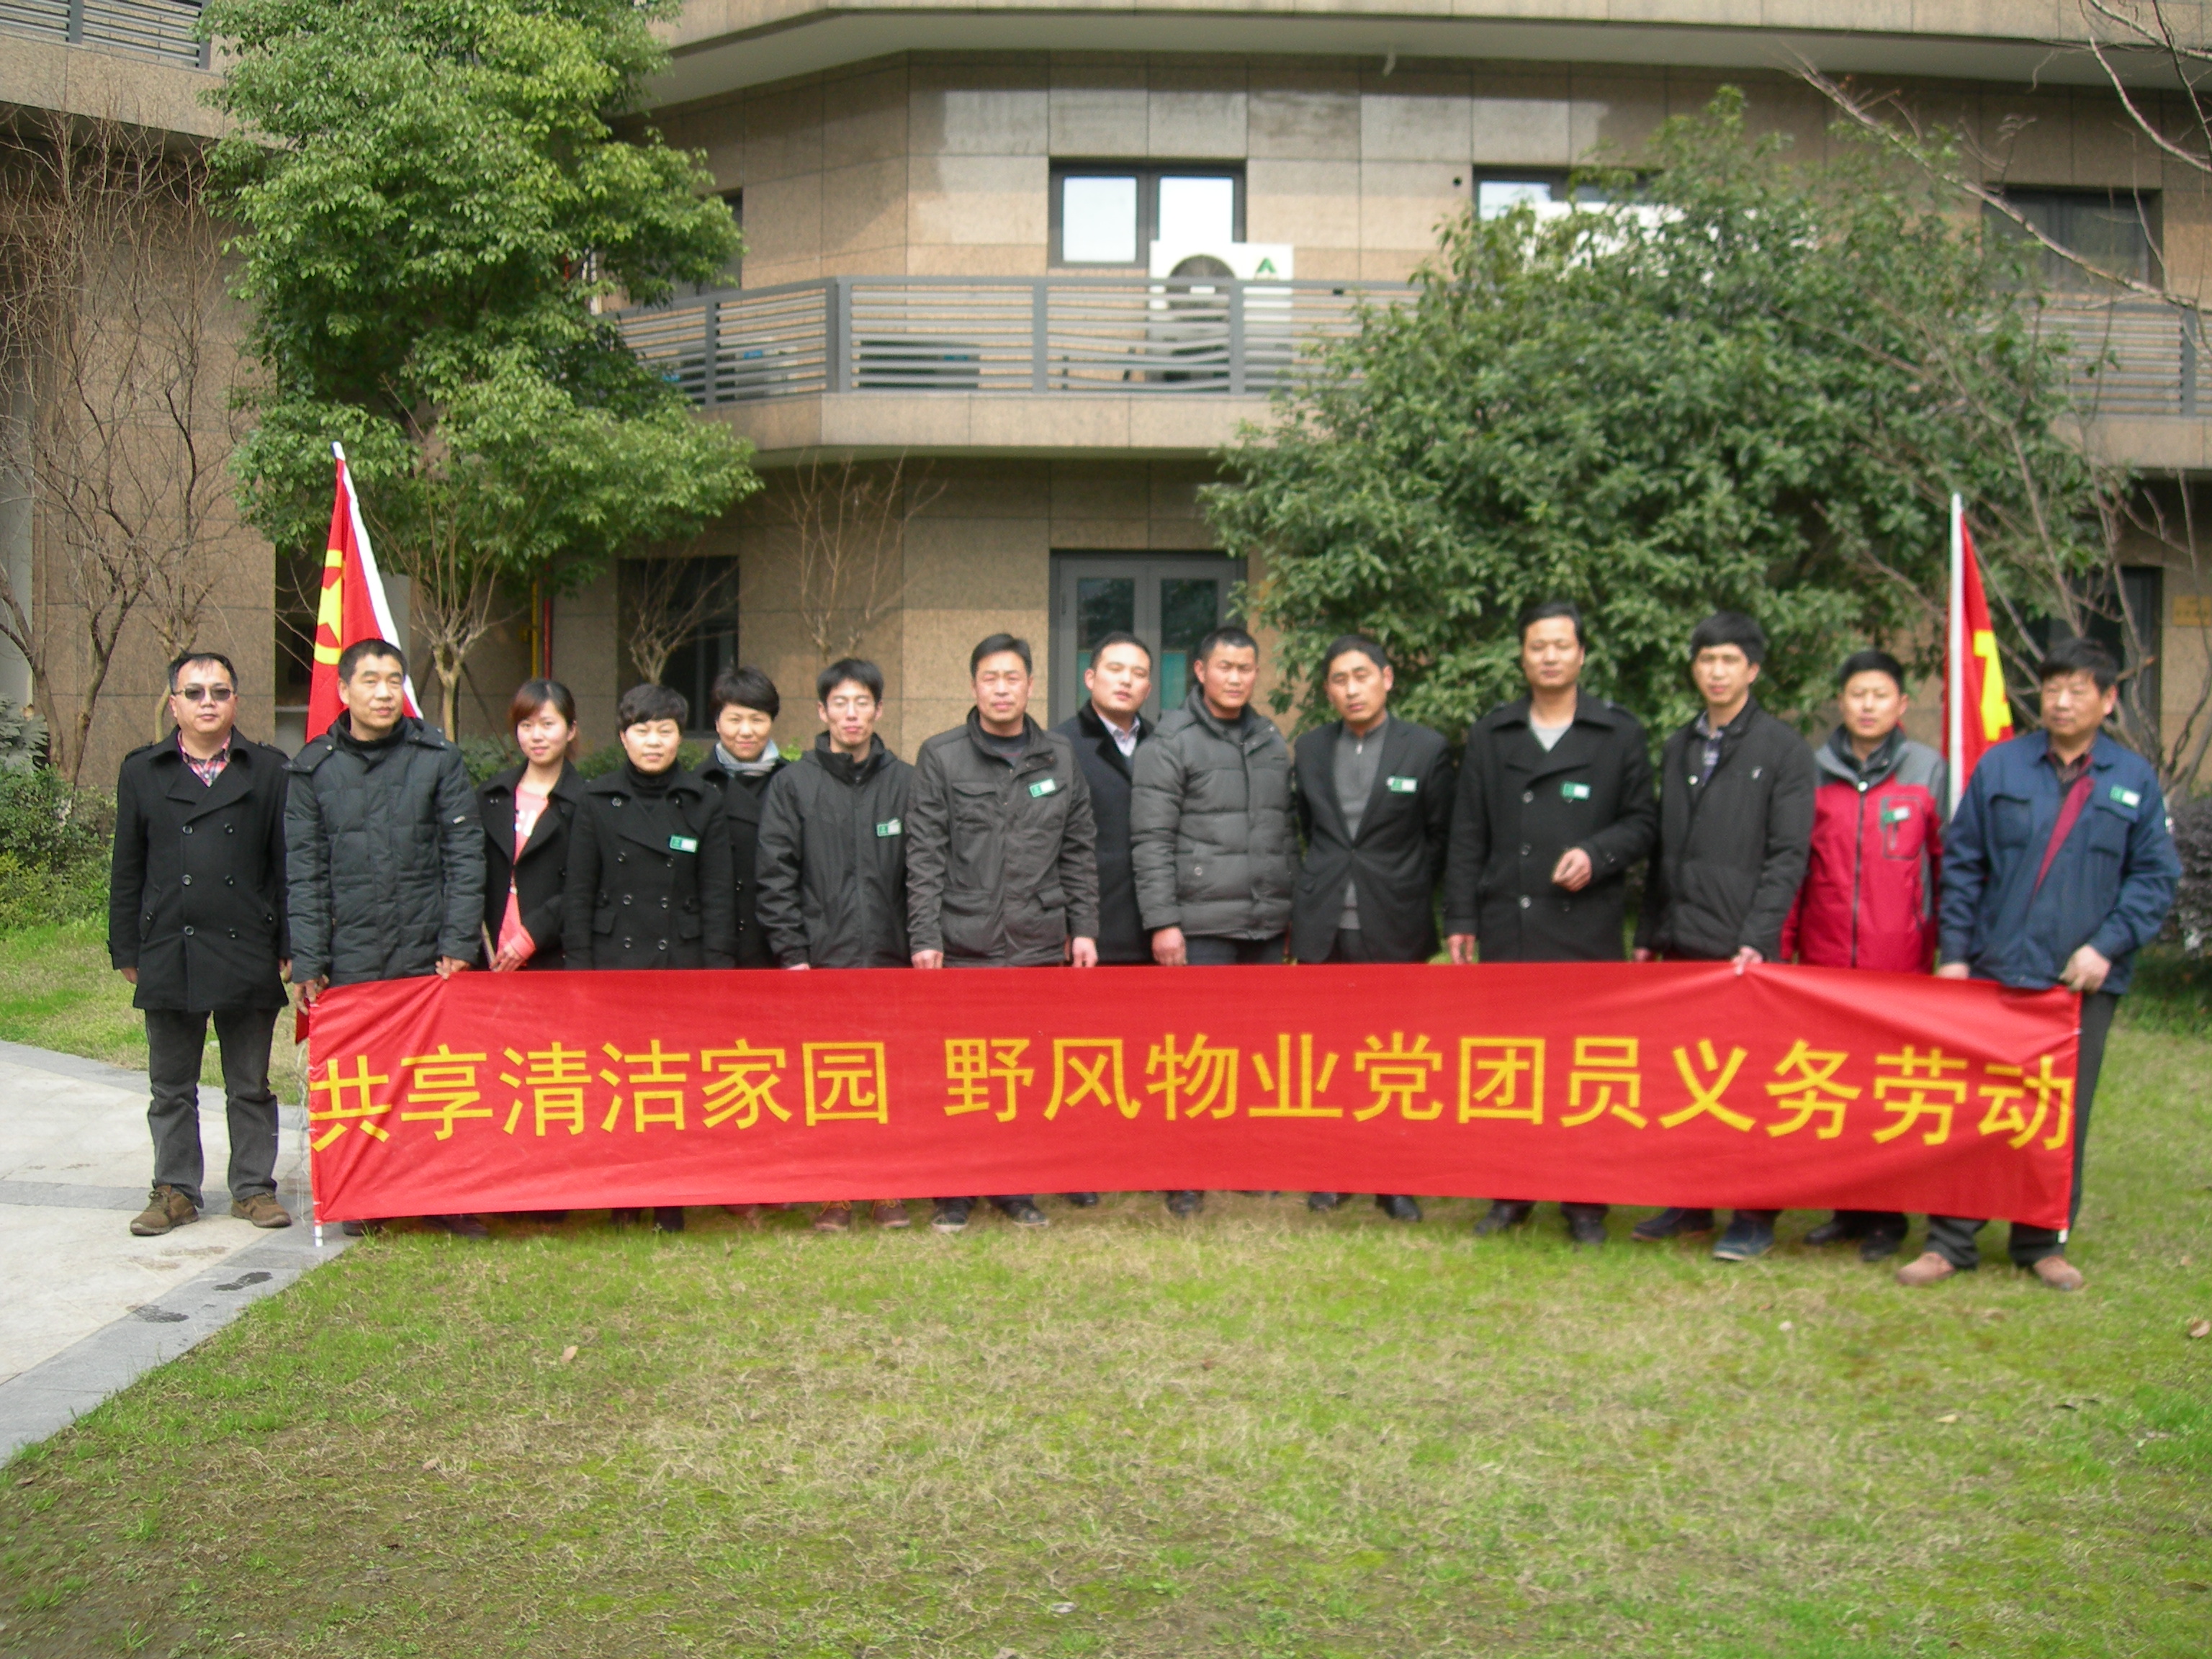 野风物业服务有限公司党团员协助小区开展清洁卫生行动.JPG